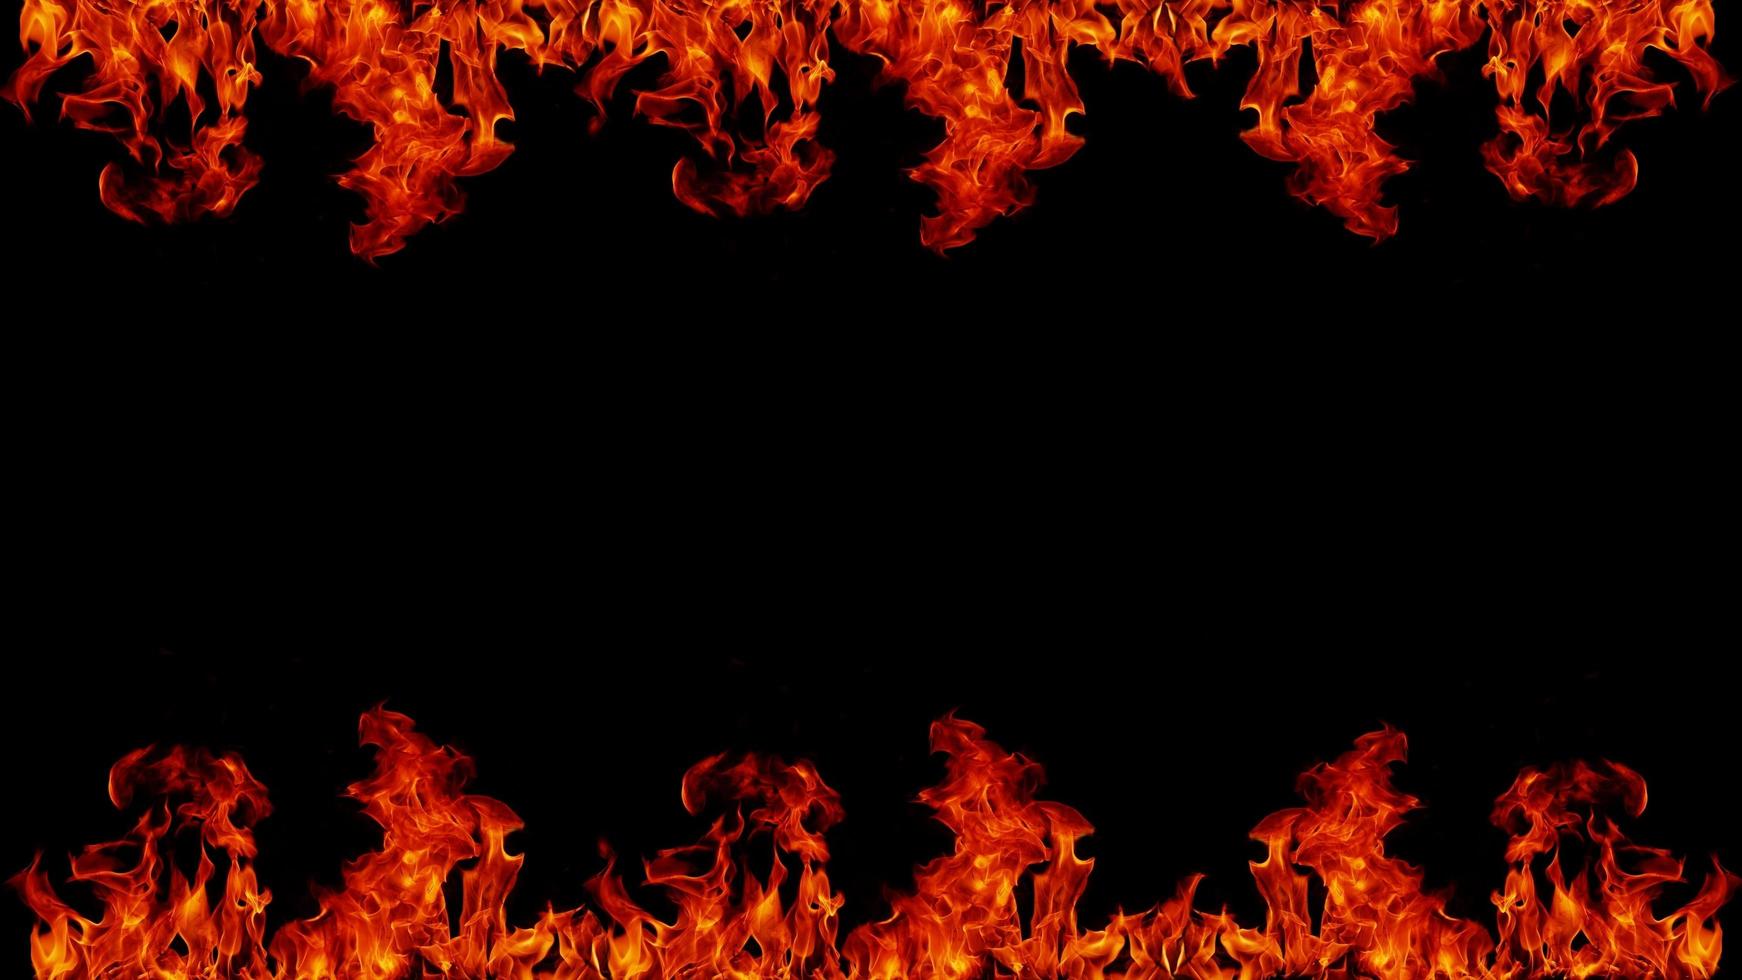 pericoloso caldo inferno fuoco fiamme cornice per foto quadrati di fuoco astratti su sfondo nero per il design.